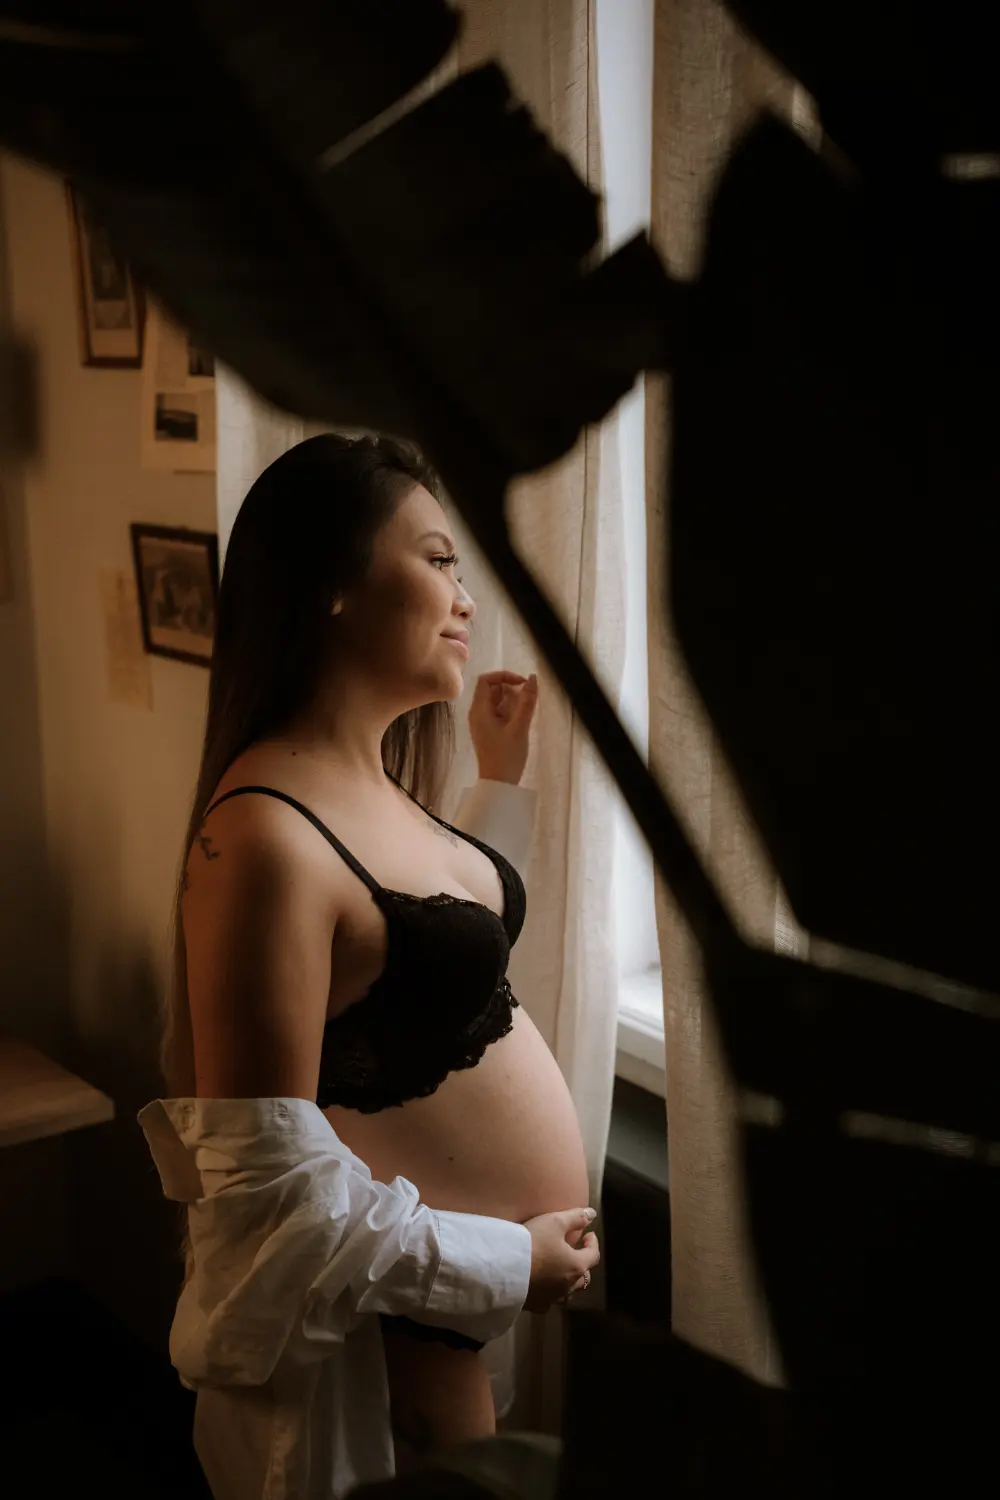 těhotná žena ve spodním prádle kouká z okna